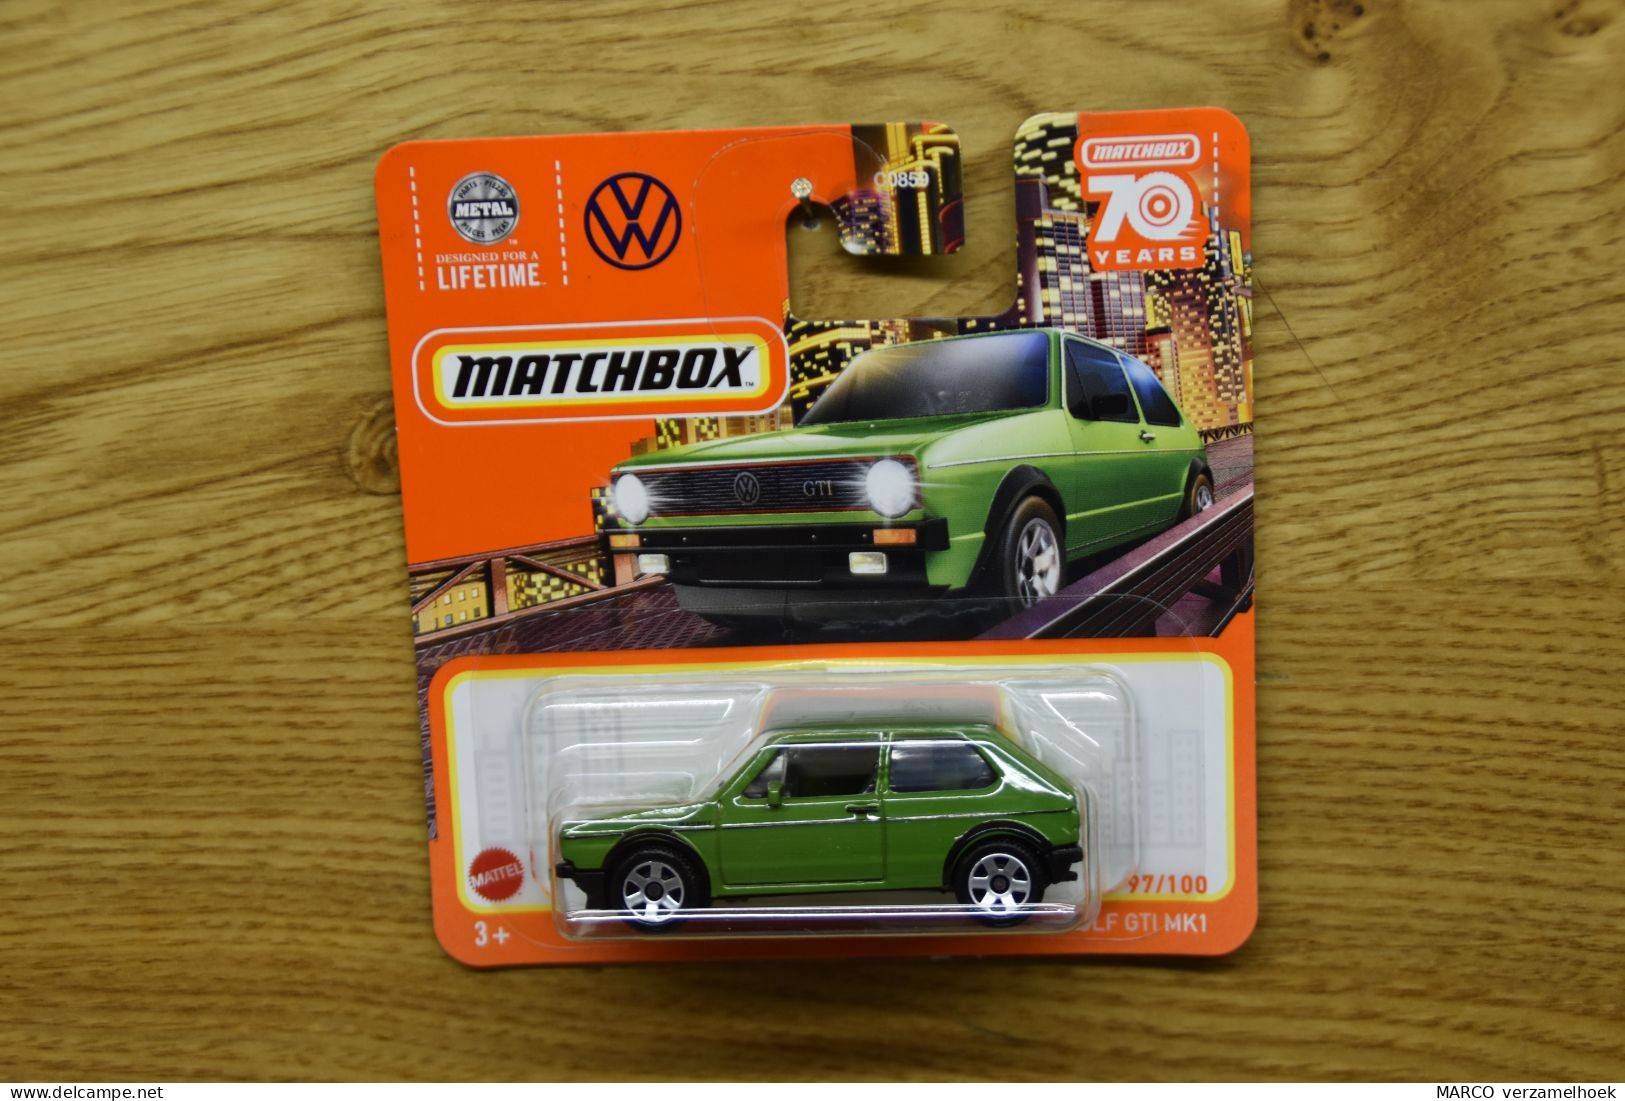 Mattel - Matchbox 97/100 VW Volkswagen Golf GTI MK1 1976 - Matchbox (Mattel)